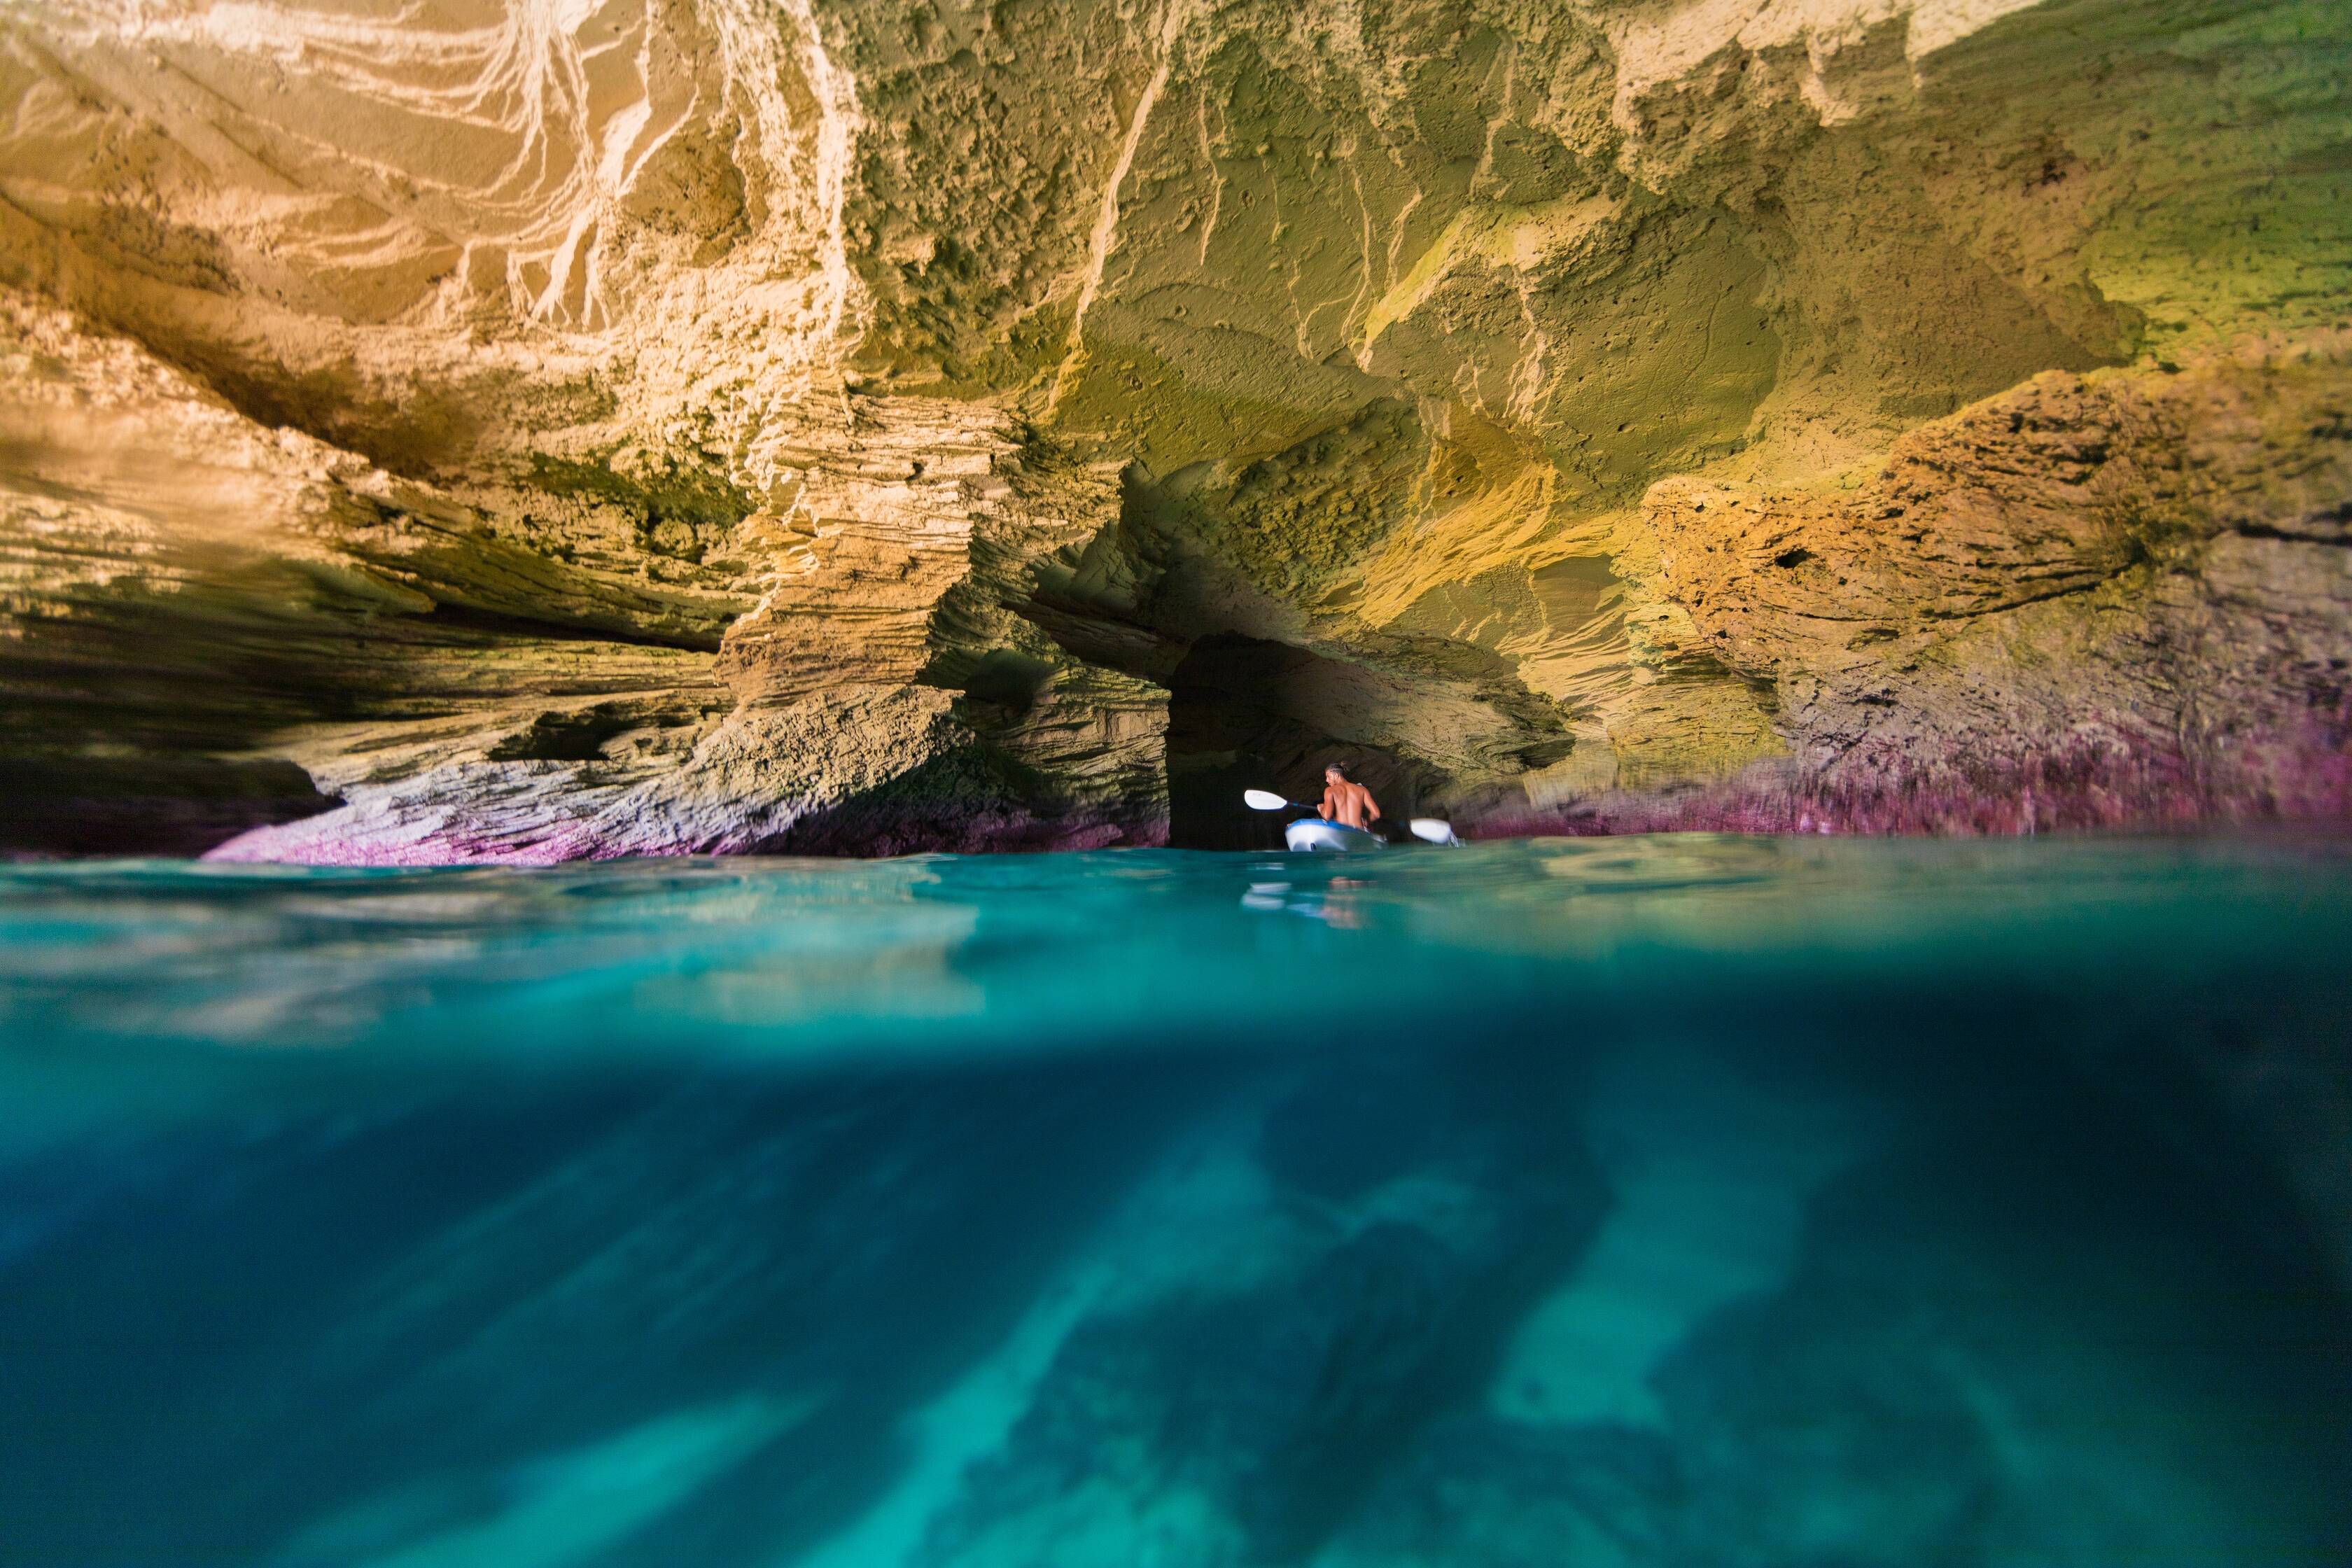 Operadoras de turismo oferecem atividades subaquáticas para os visitantes mais aventureiros, como mergulhos e snorkeling; na foto, caverna localizada em Prickly Pear, ilha próxima de Anguilla. Foto: Divulgação